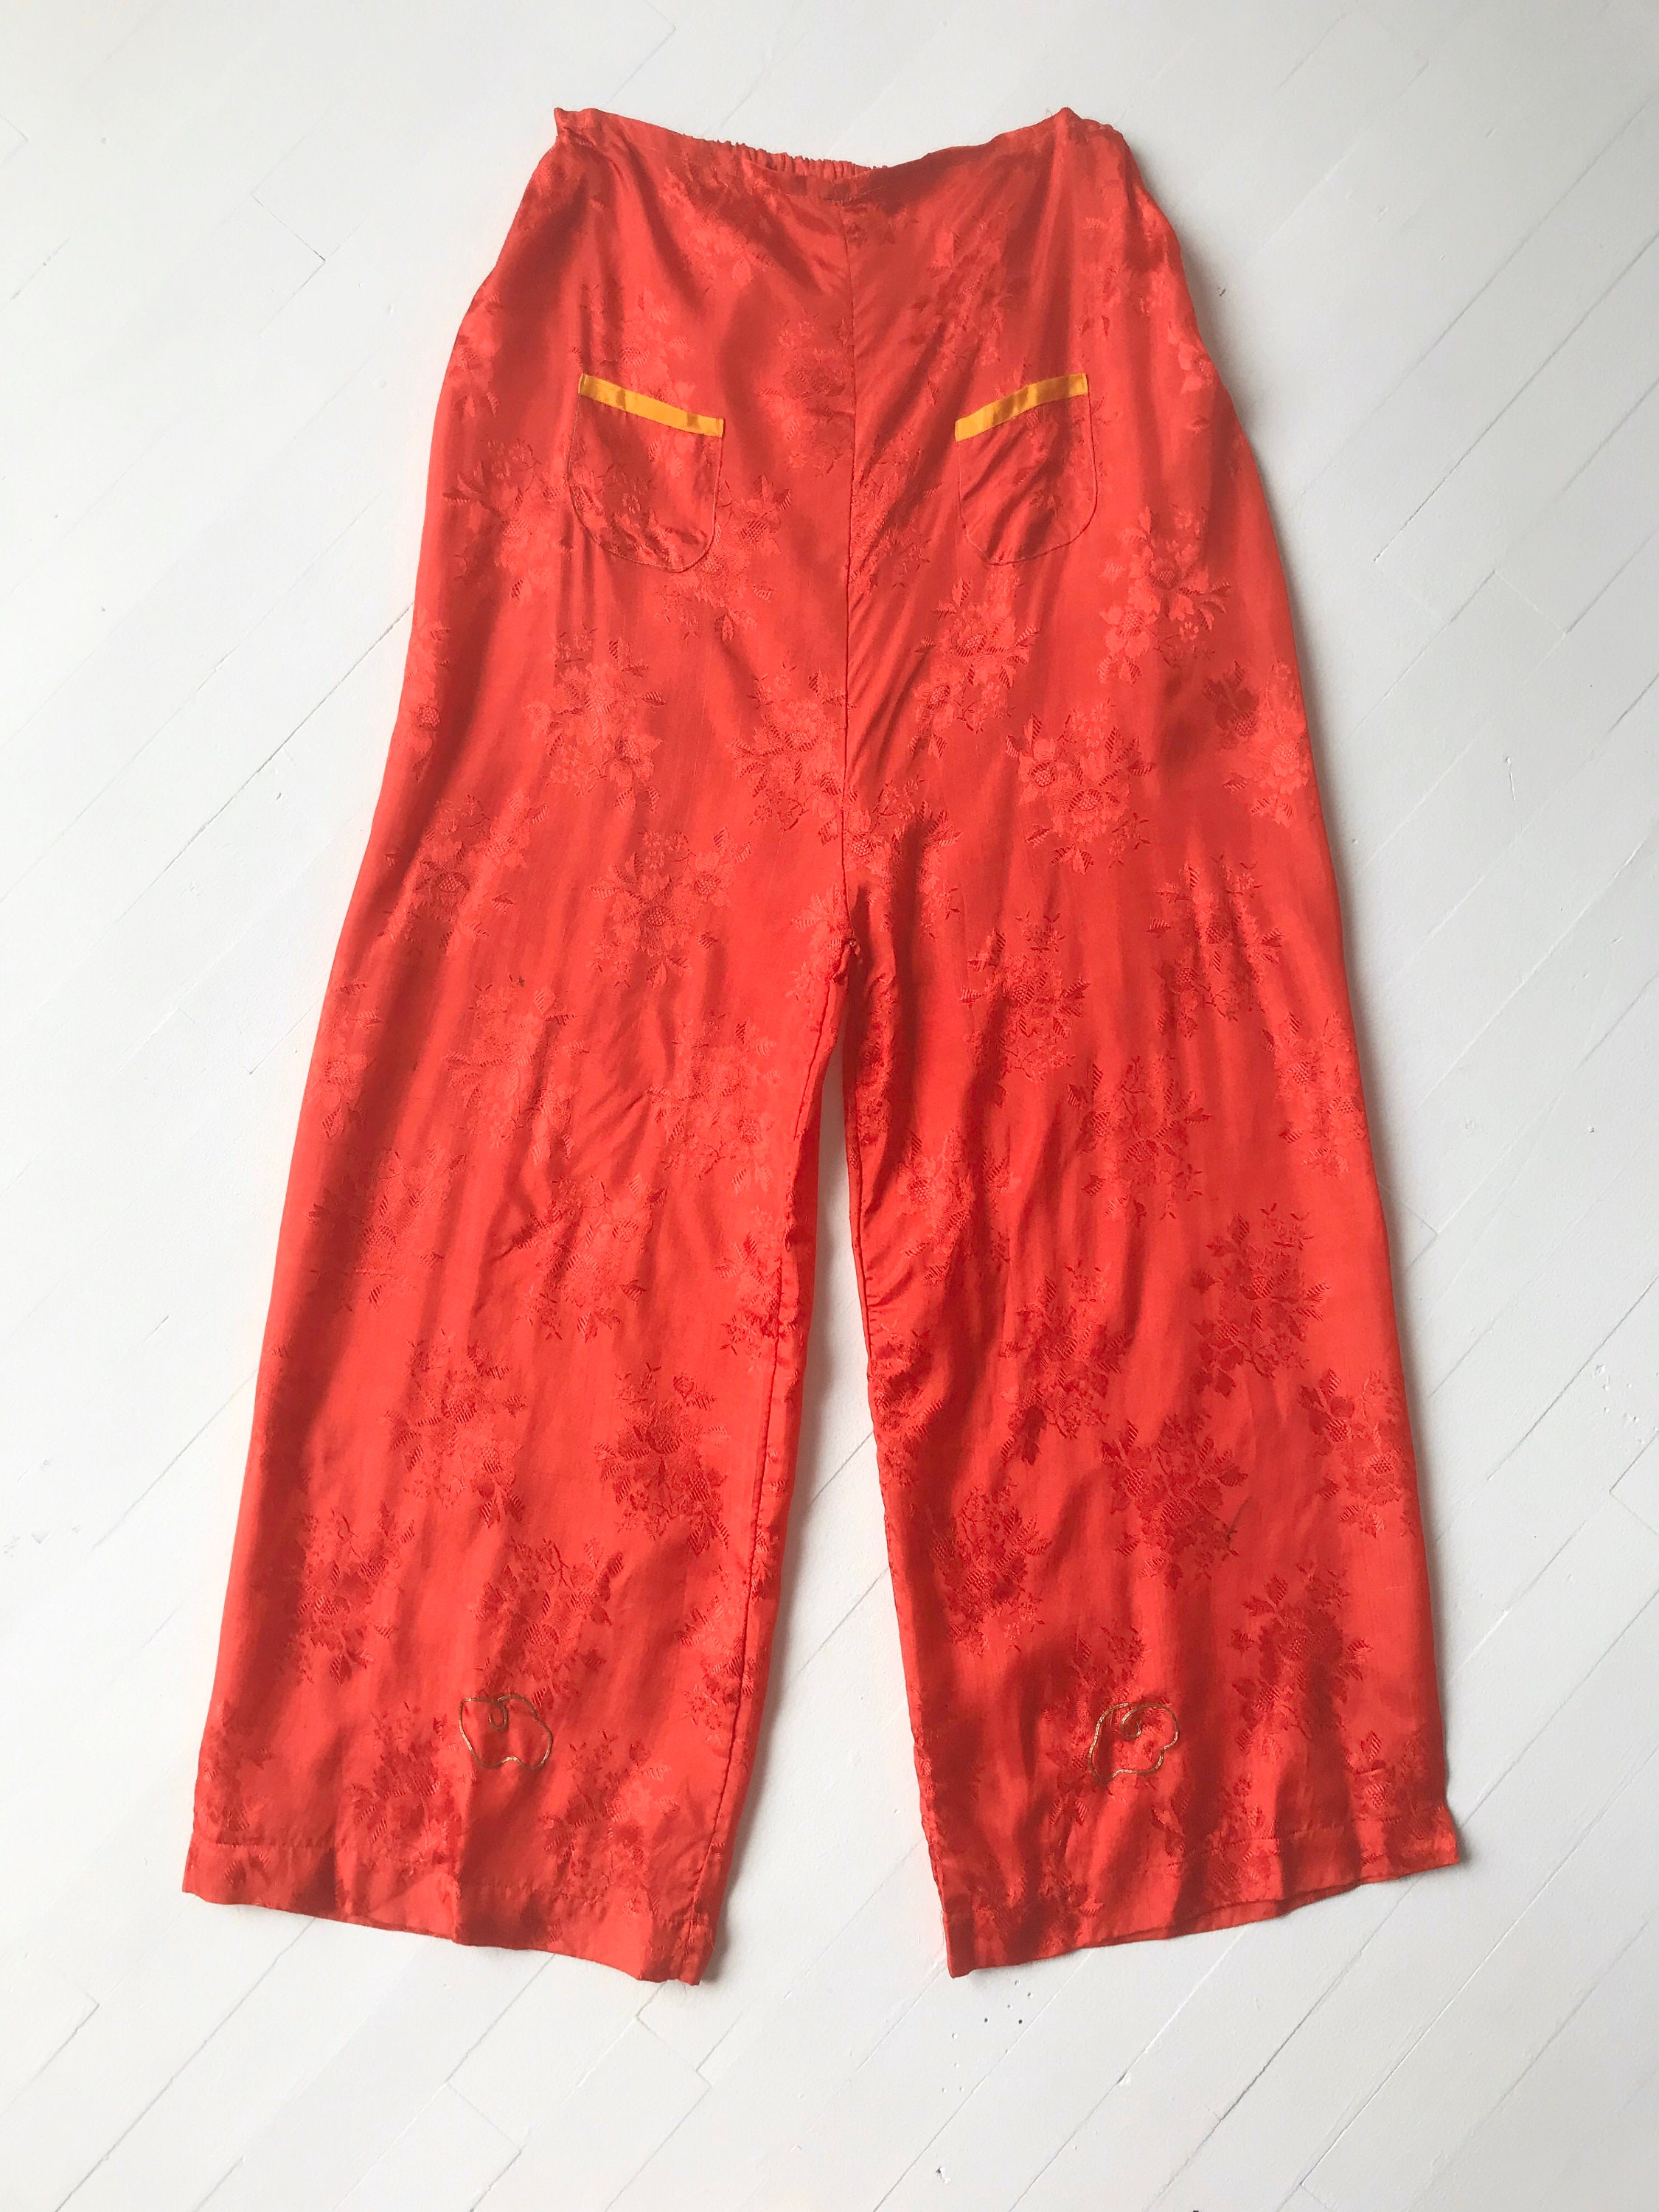 1930s / 1940s Japanese Jacquard Rayon Pajama Set - Etsy